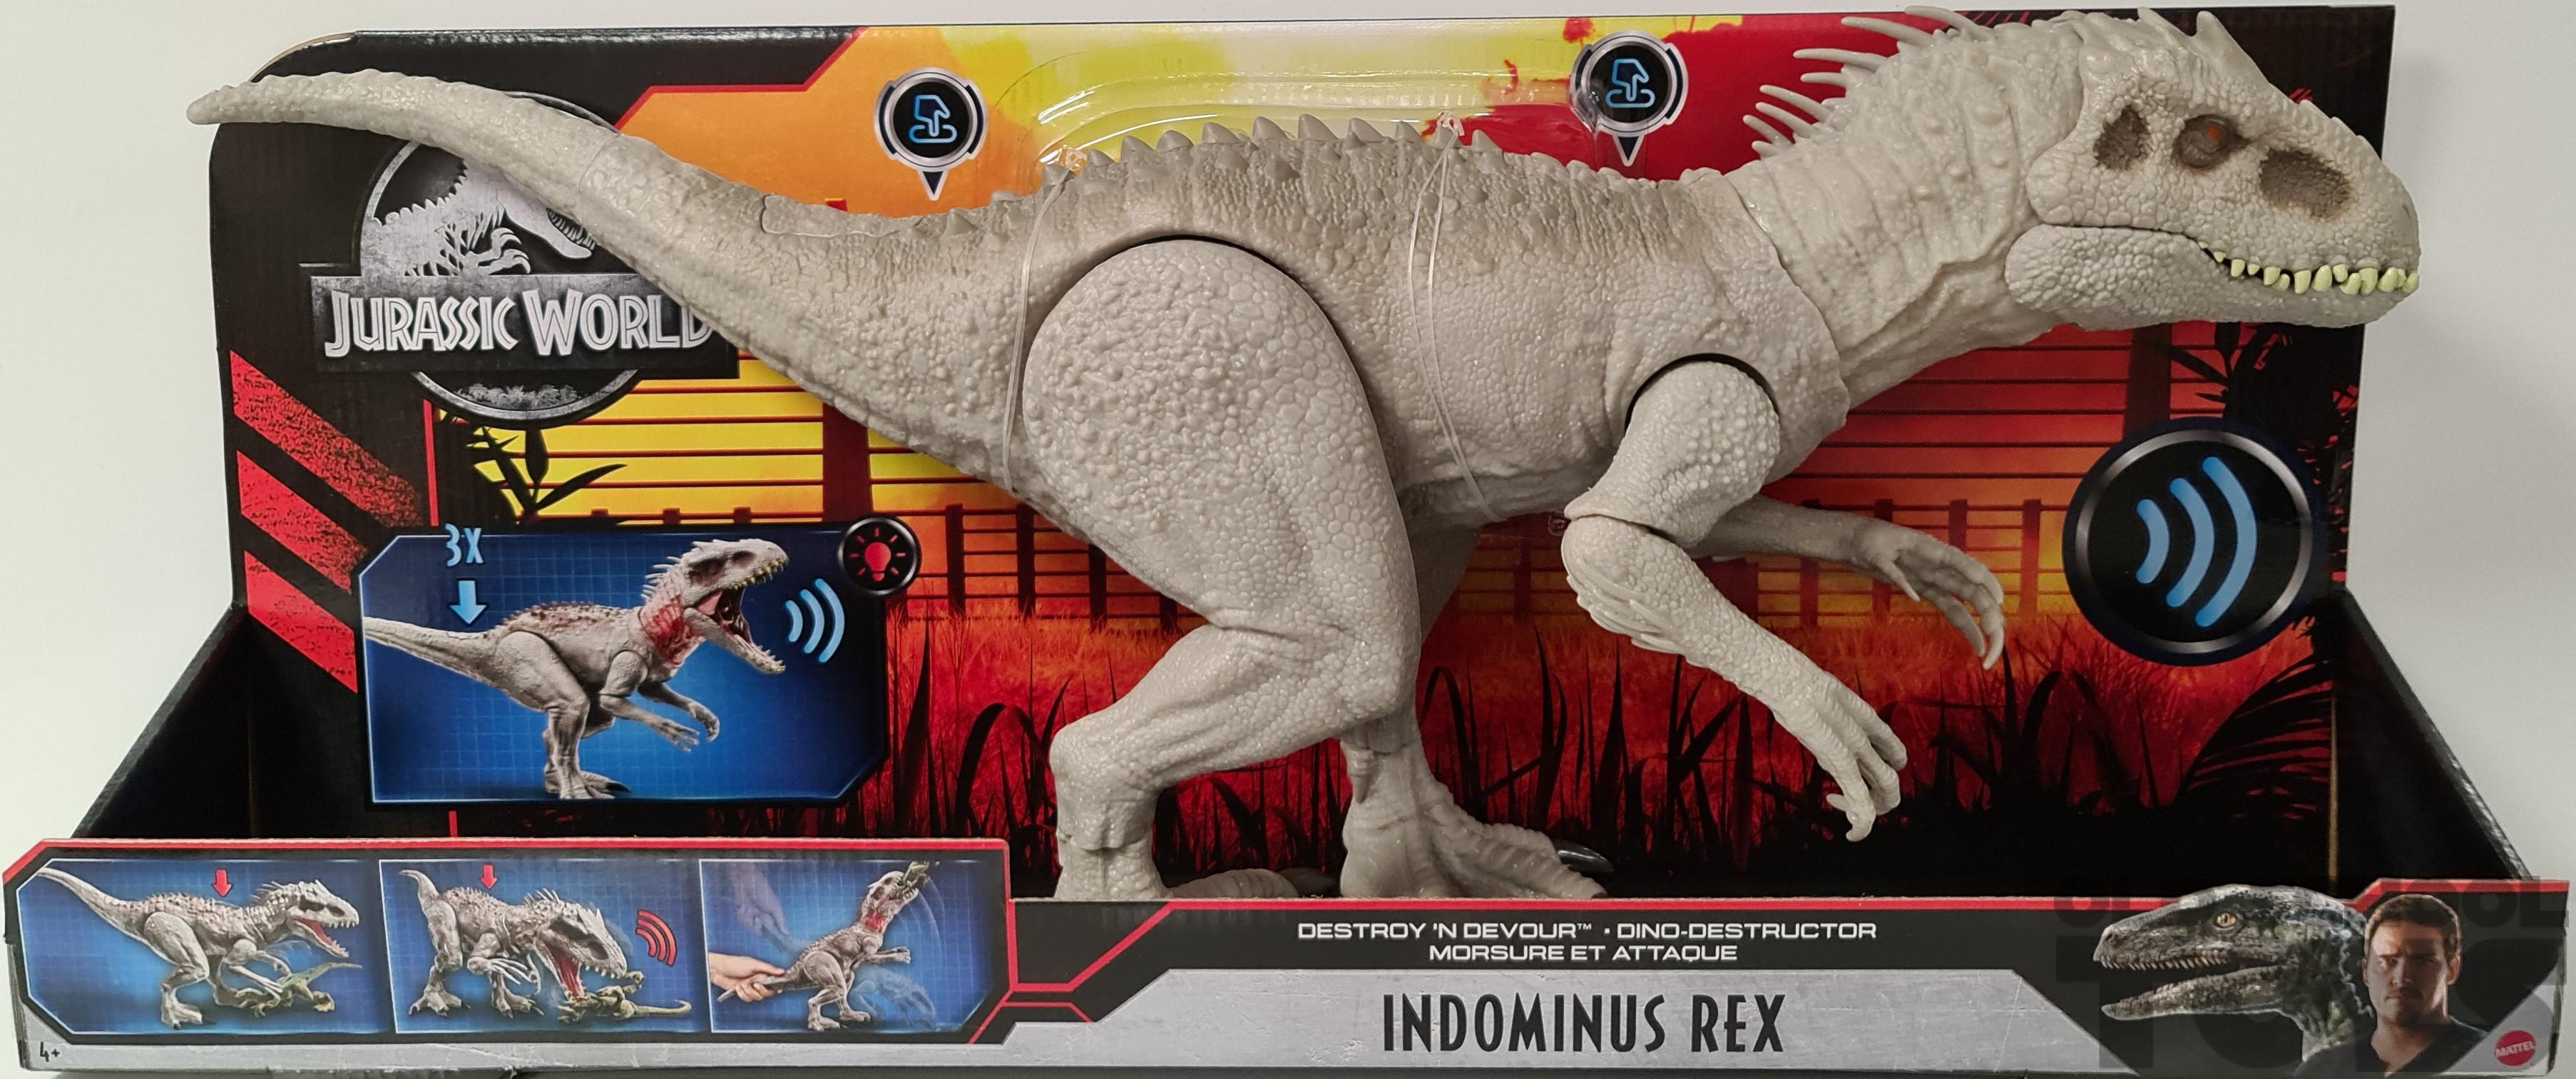 naald boksen uitbarsting Indominus Rex (destroy 'n devour) Jurassic World in doos | Old School Toys